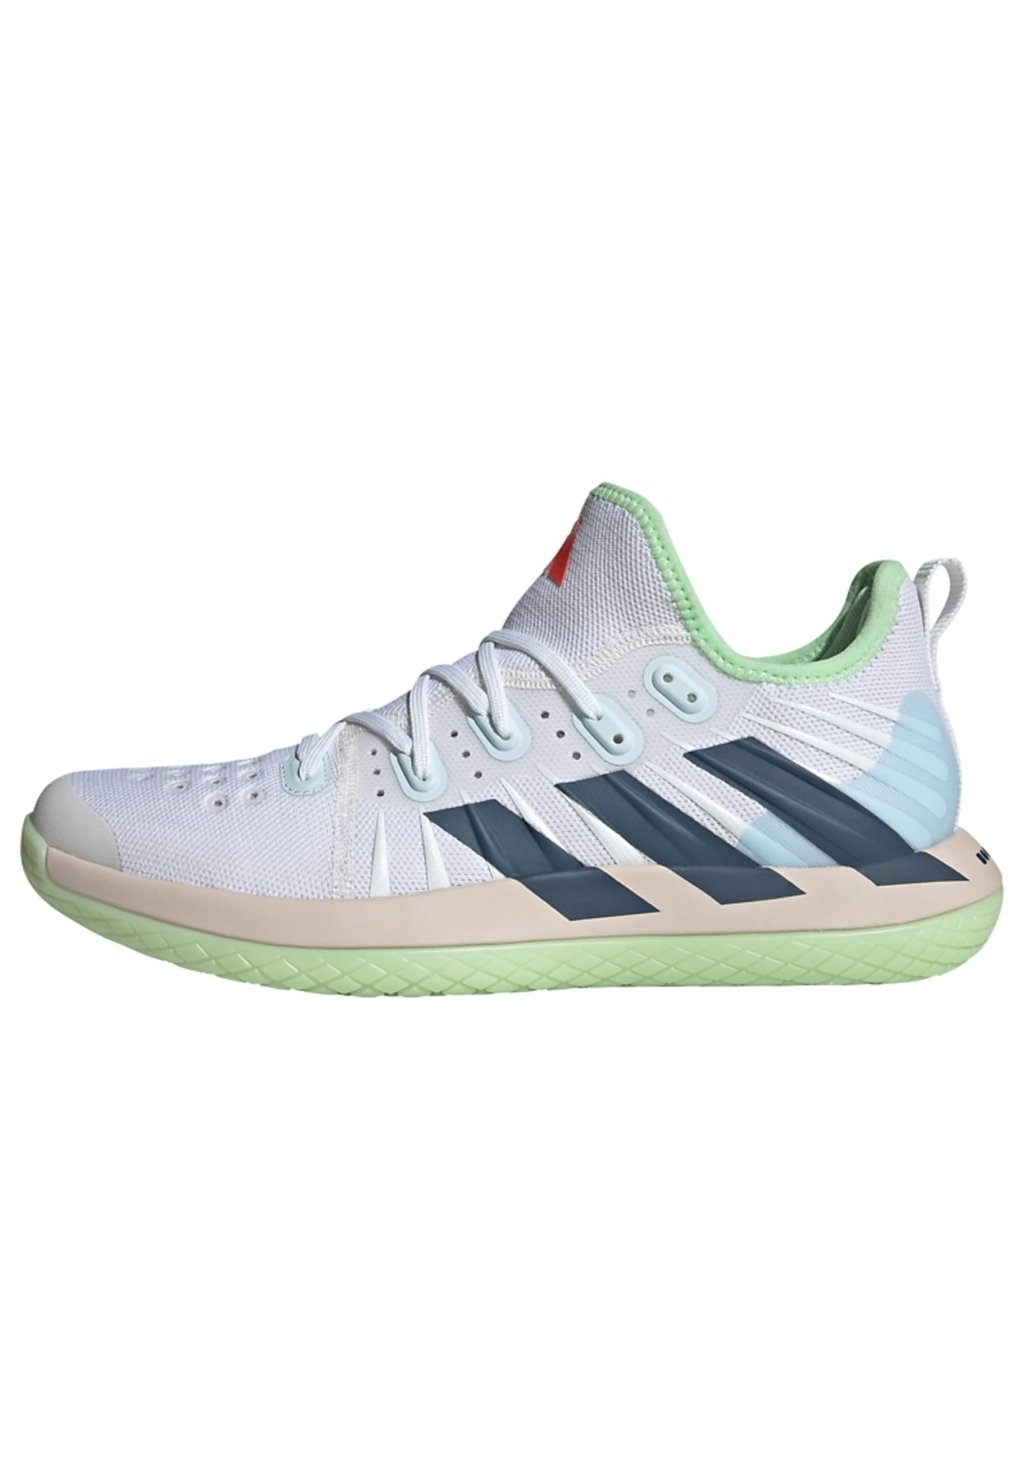 Кроссовки для тенниса с искусственным покрытием Stabil Next Gen Adidas, цвет cloud white preloved ink semi green spark